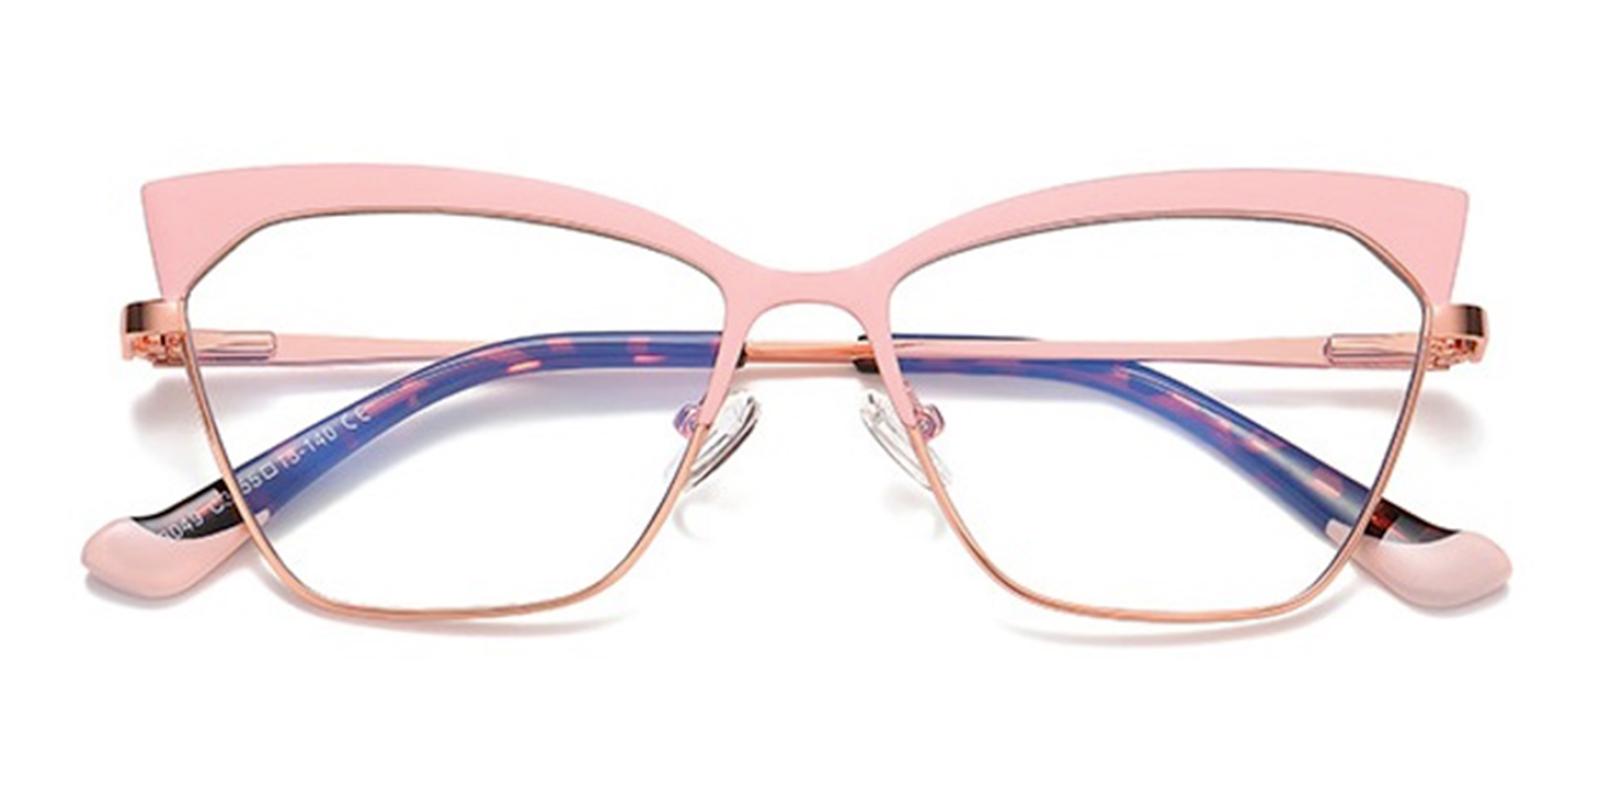 Tradla Rosegold Metal Eyeglasses , NosePads , SpringHinges Frames from ABBE Glasses